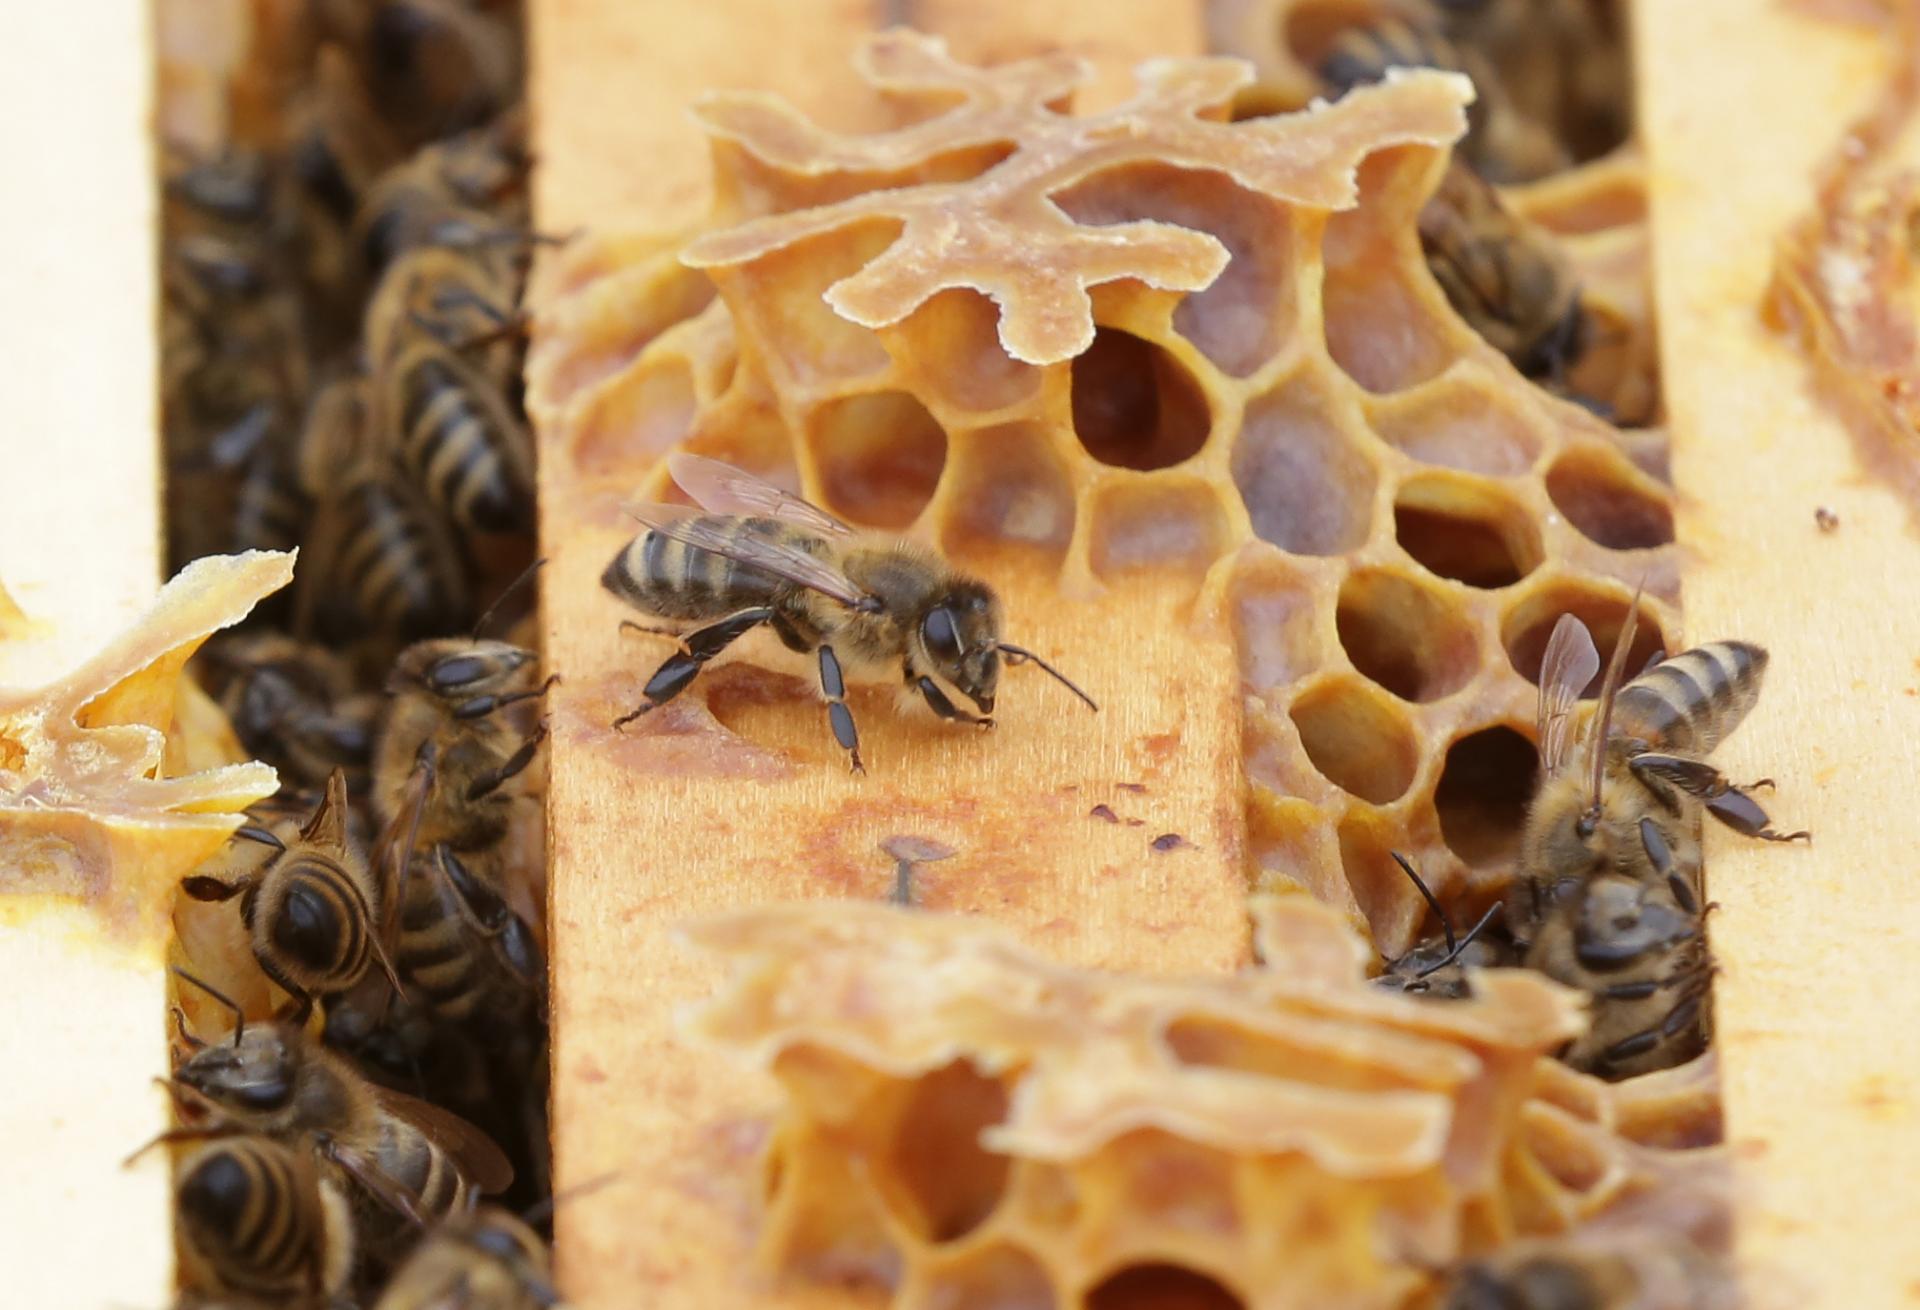 Eurokomisia privítala iniciatívu občanov o záchrane včiel. Klimatická zmena je výzvou pre poľnohospodárstvo